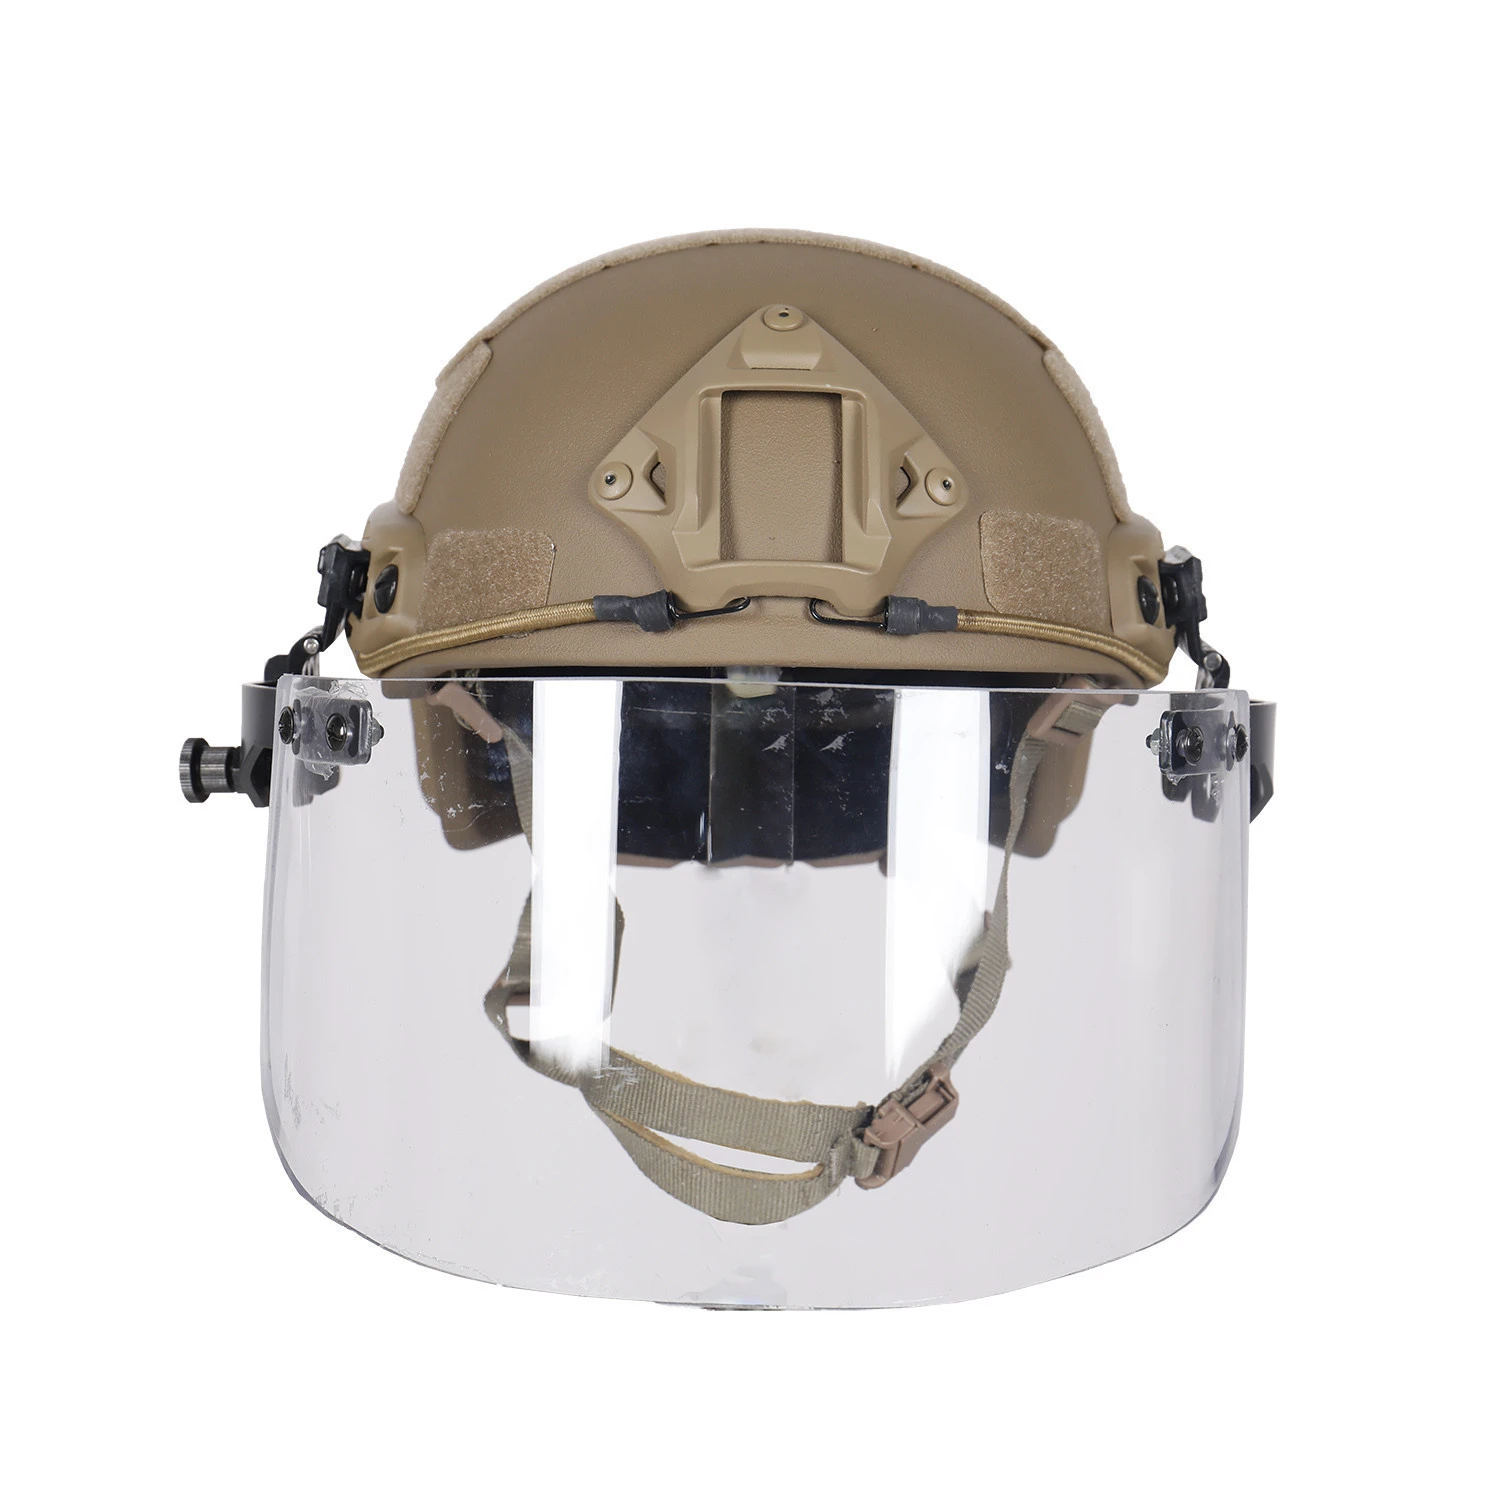 Level IIIA tactical combat fast bulletproof helmet with visor